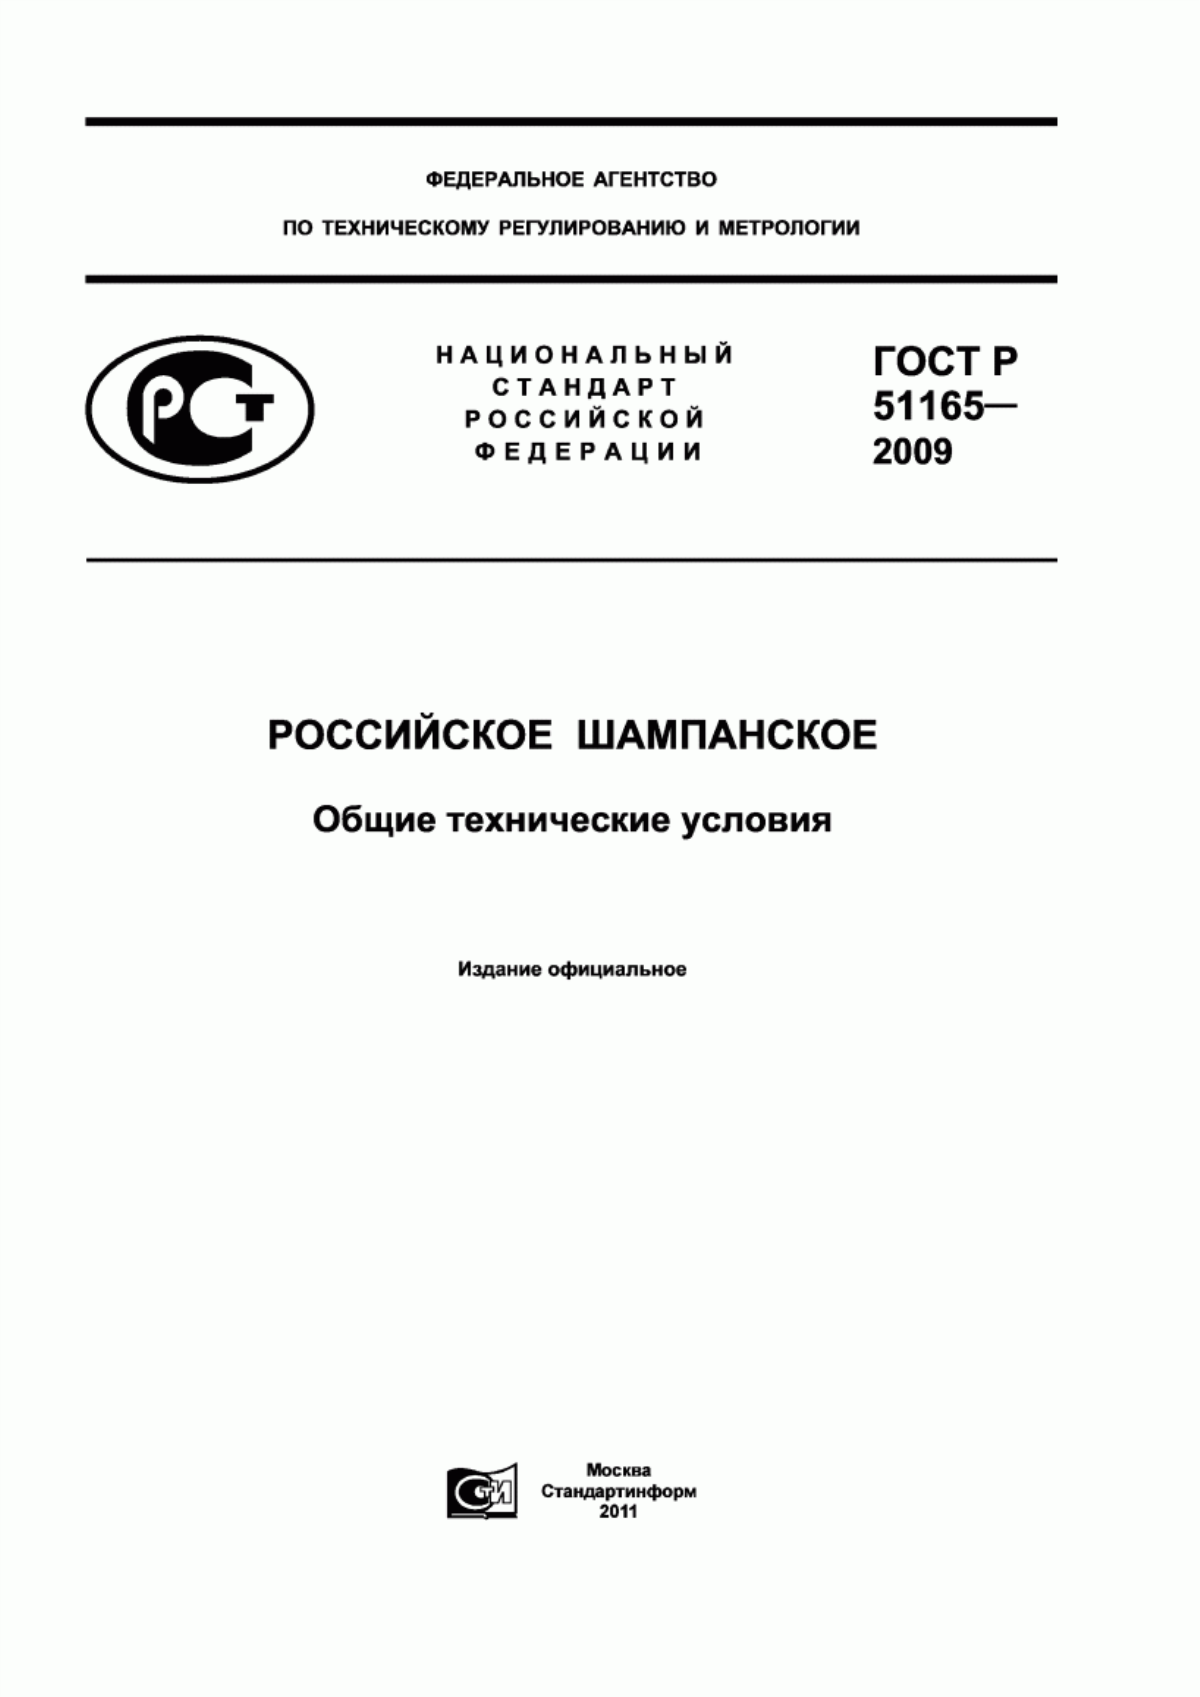 ГОСТ Р 51165-2009 Российское шампанское. Общие технические условия